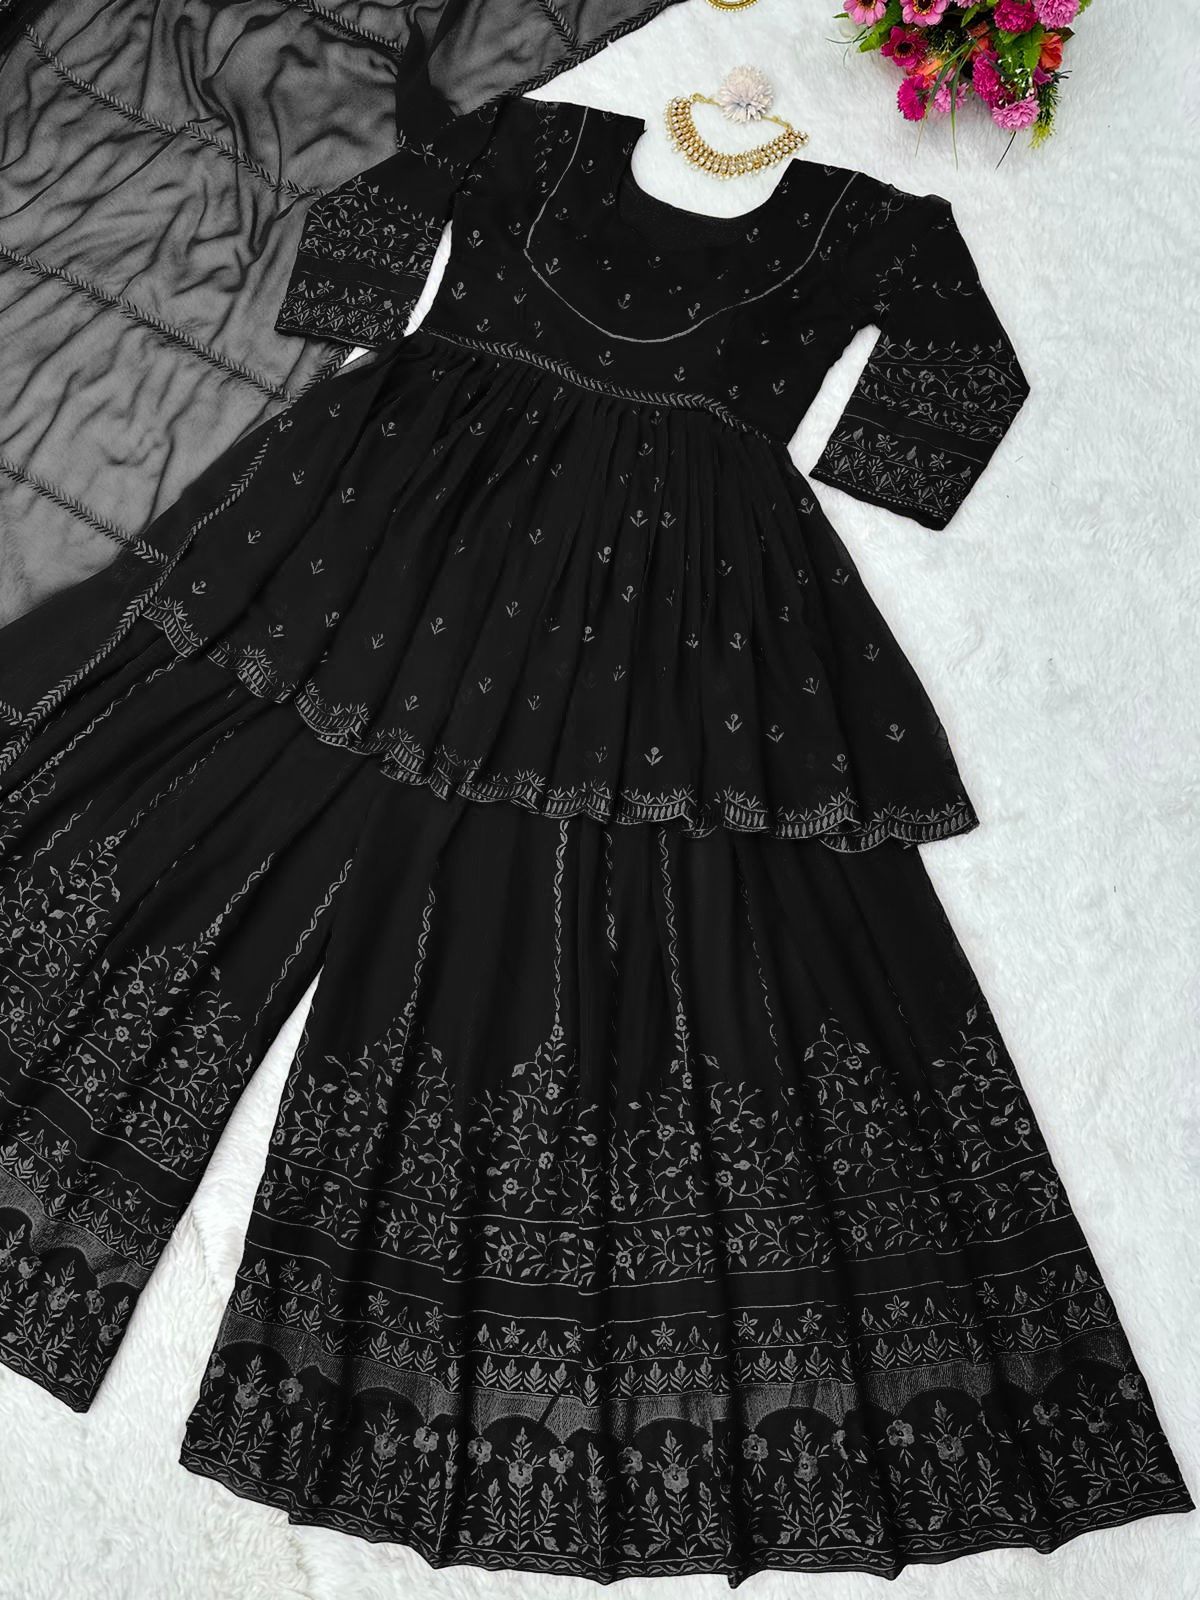 Sara Ali Khan Ware Black Color Sharara Suit